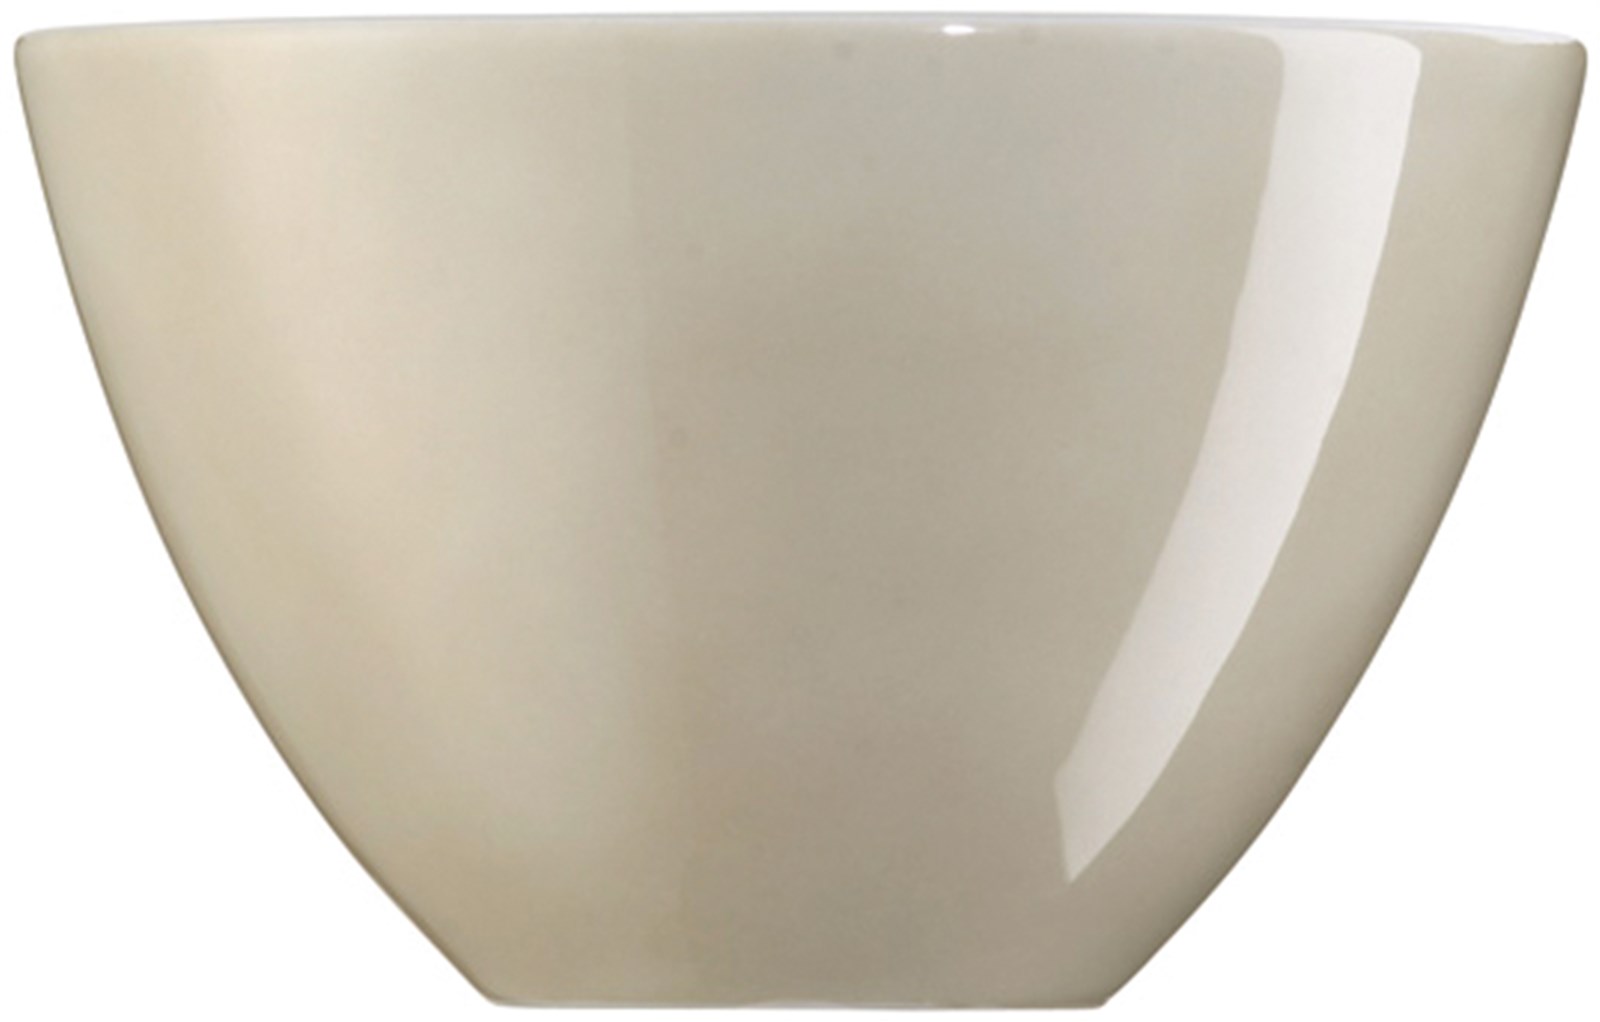 ARZBERG Schale 0,7 l Form 1382 Weiß Schüssel Bowl 